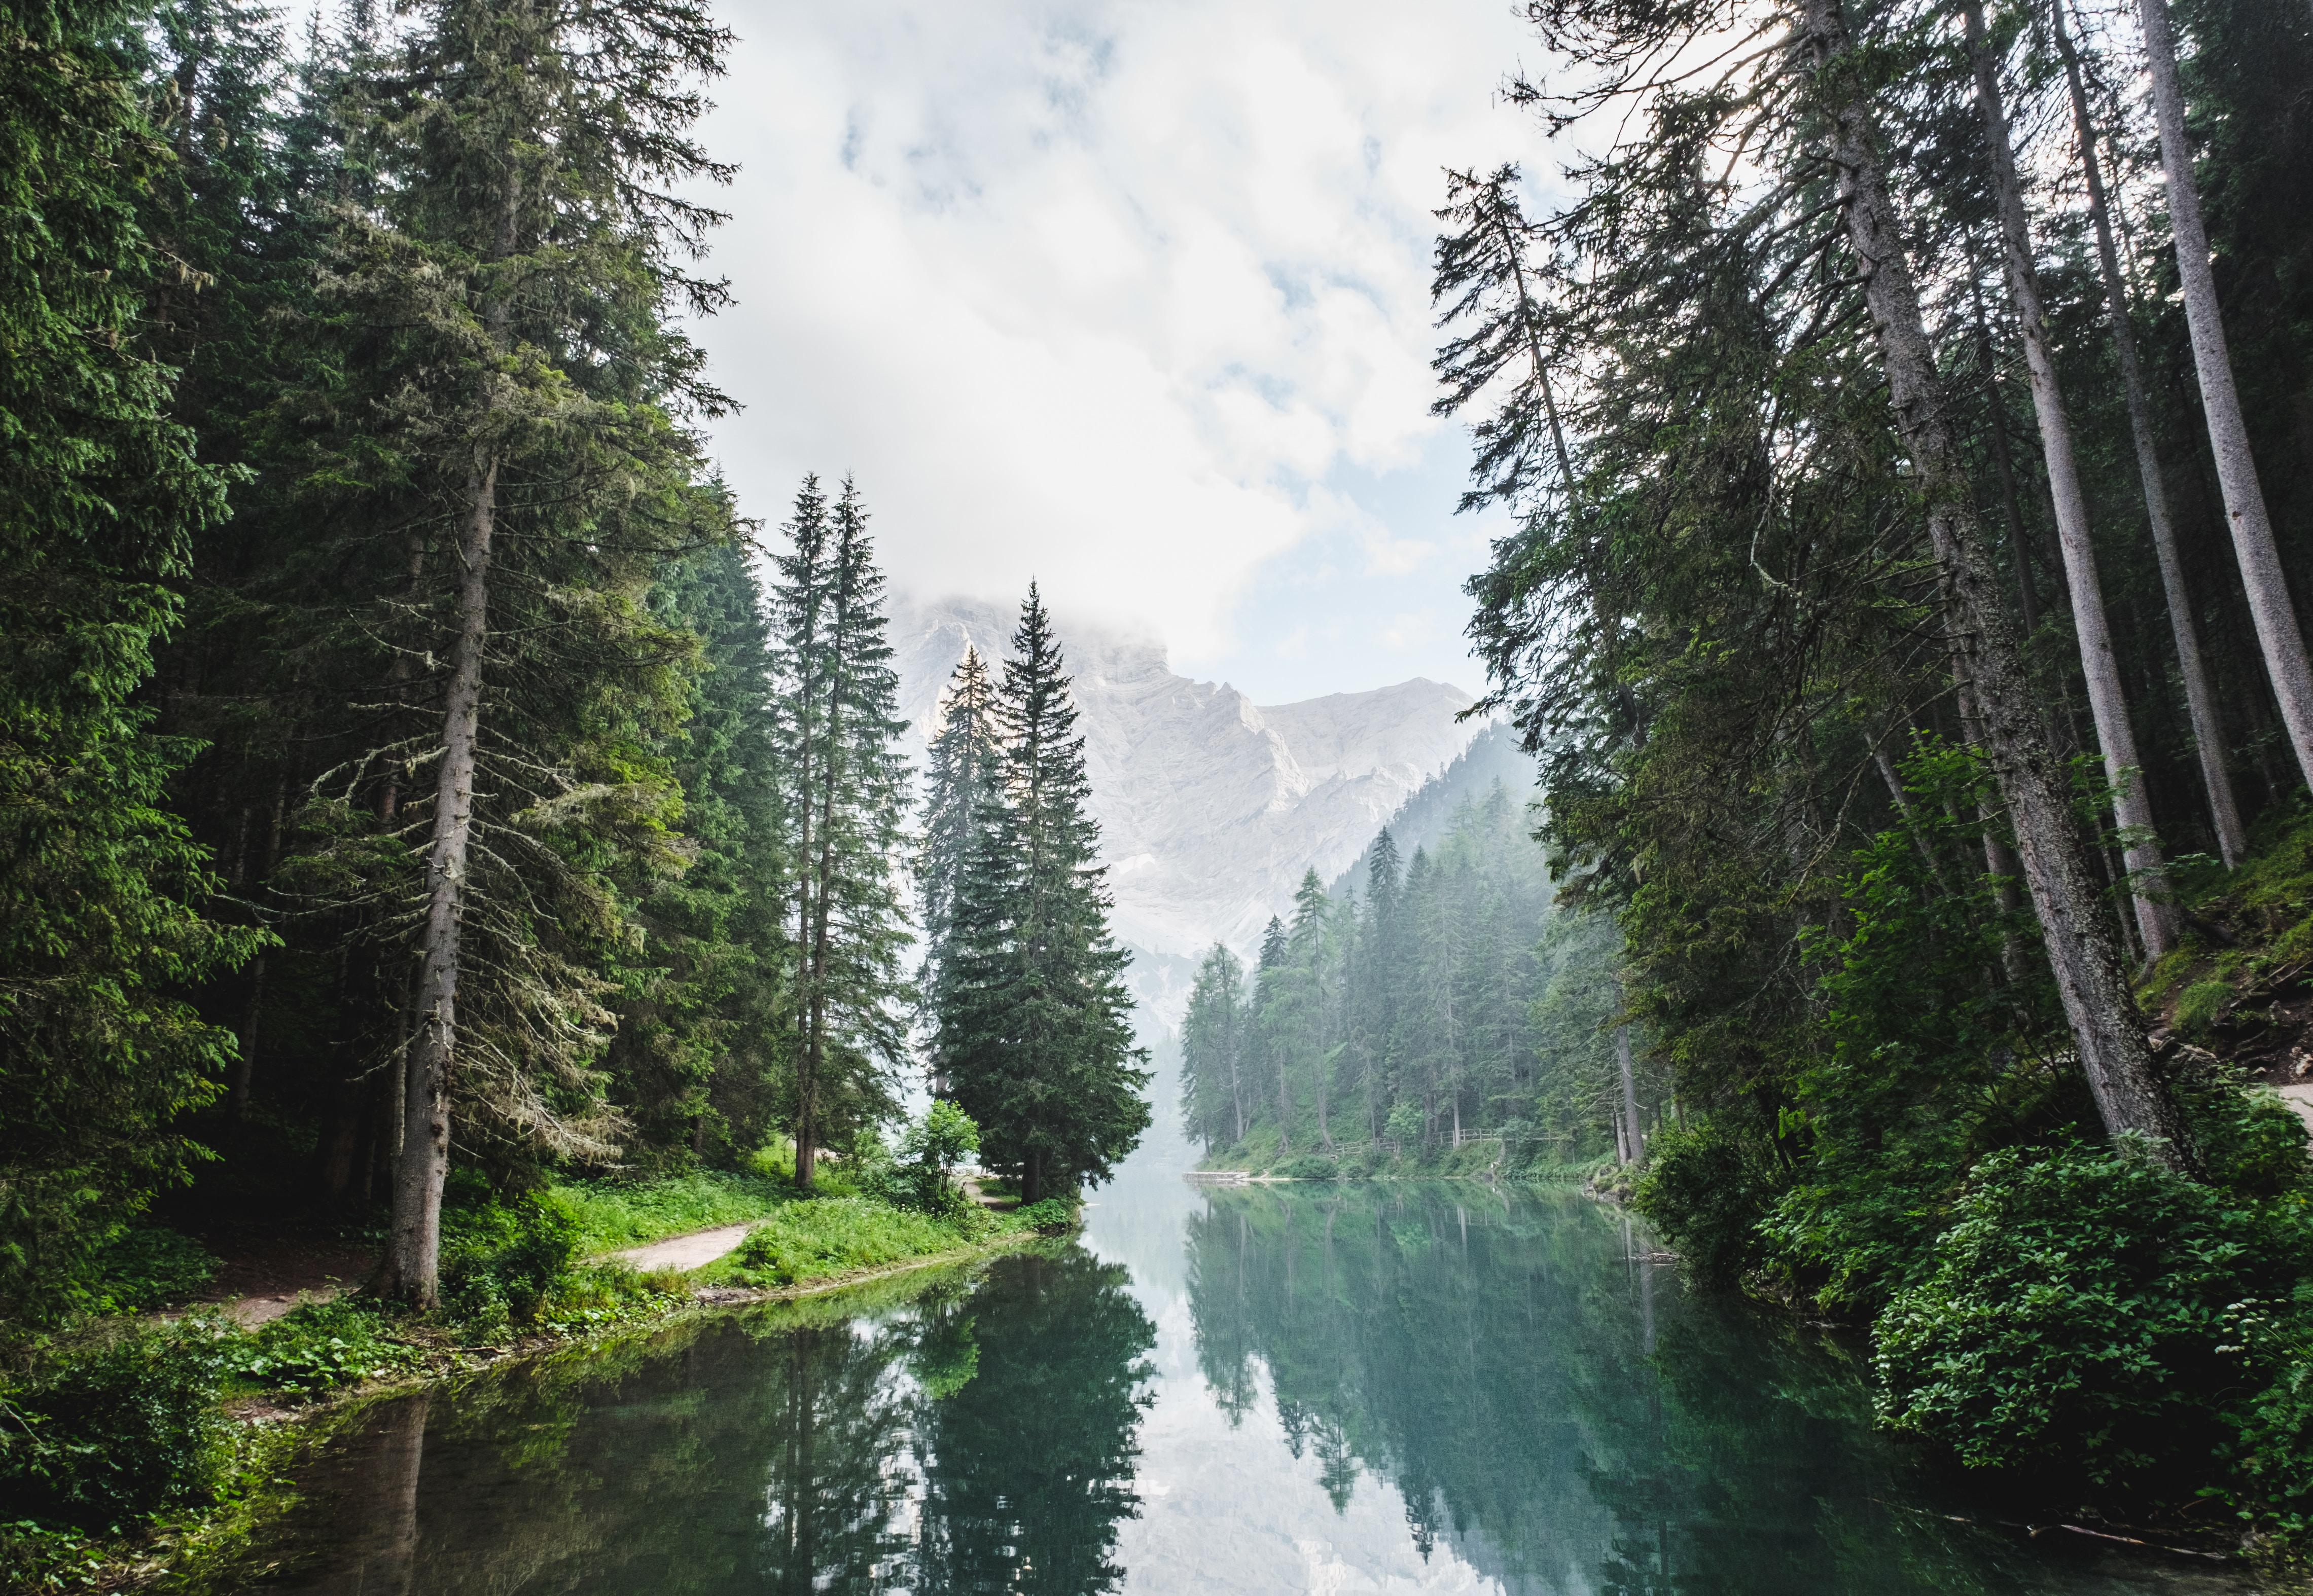 Natur pur: Wald, Berge, ein ruhiger Fluss